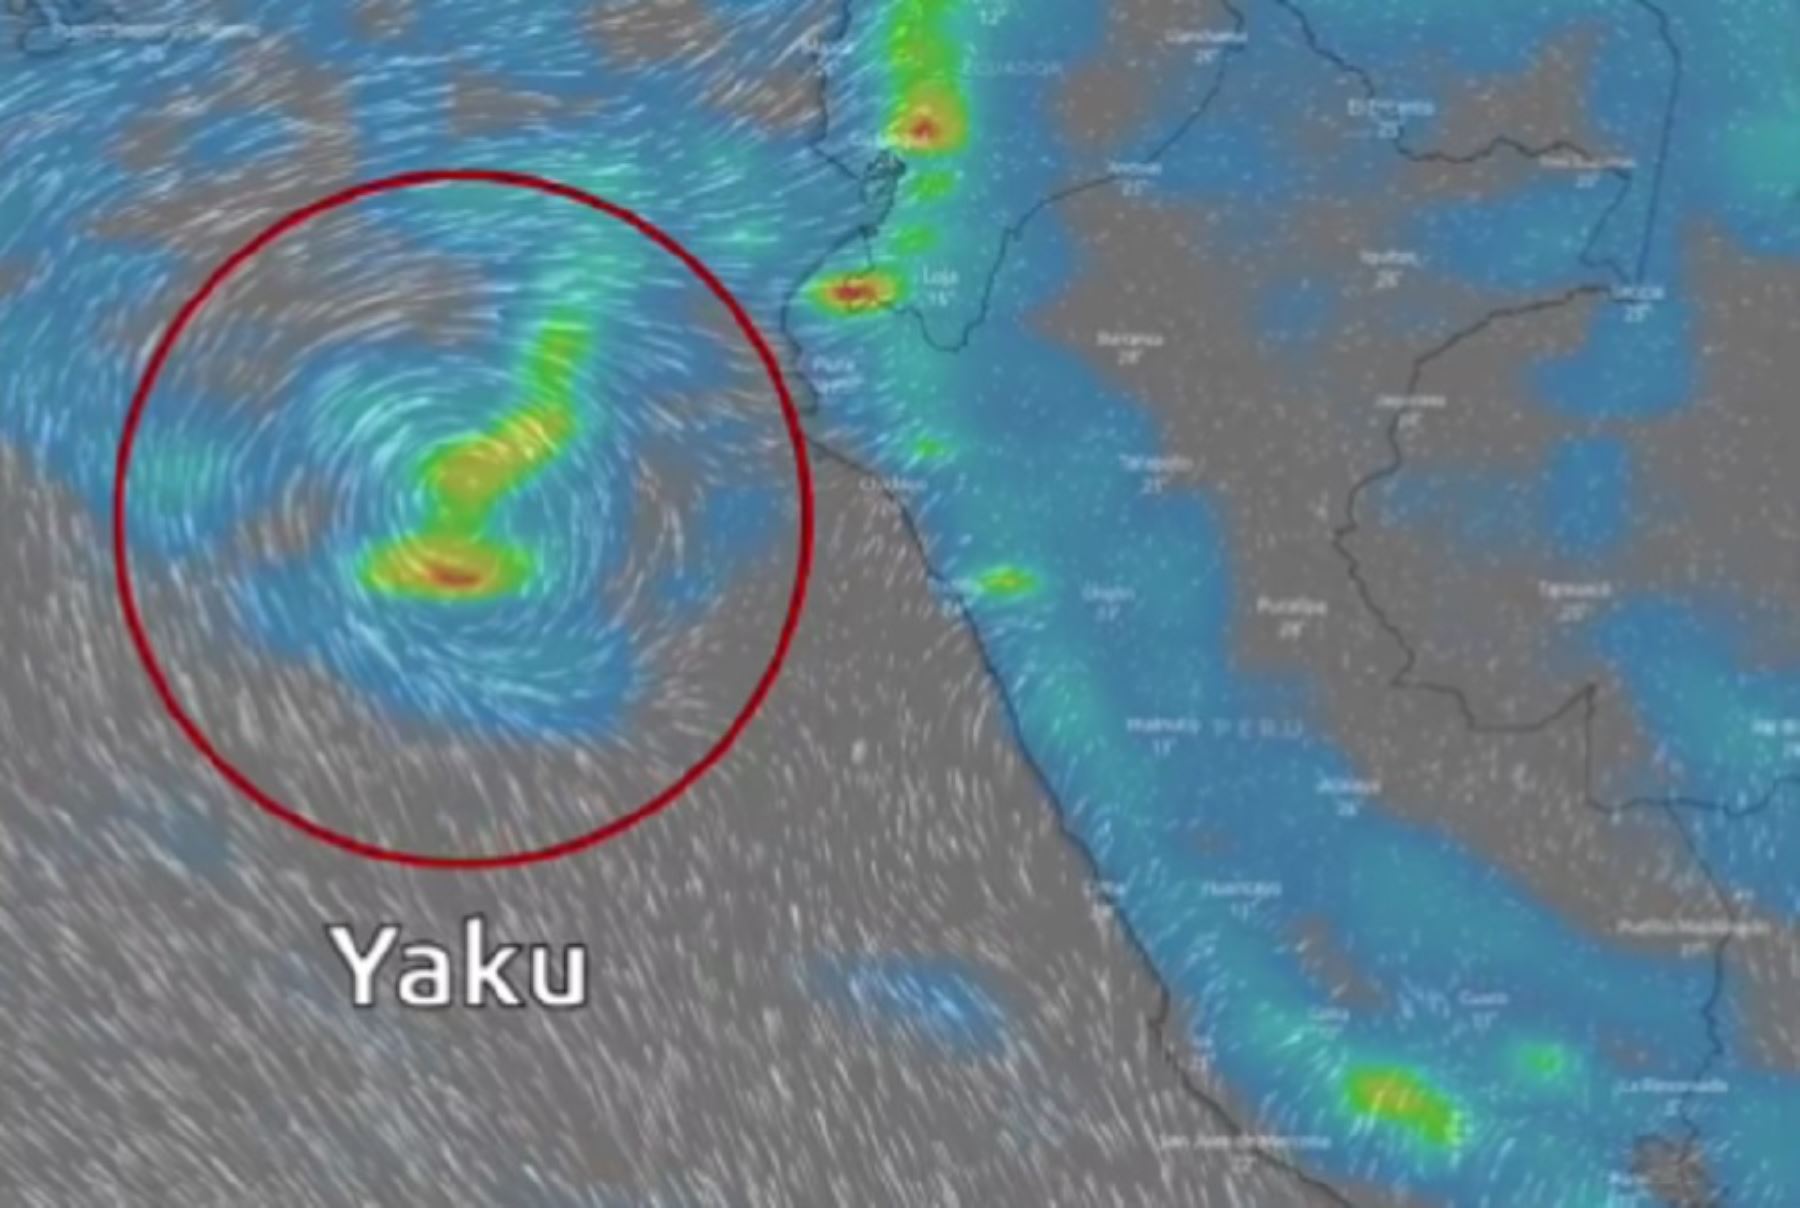 El ciclón Yaku es un sistema de baja presión de giro en sentido horario, asociado al calentamiento de la temperatura superficial del mar y a la segunda banda de la Zona de Convergencia Intertropical (ZCIT).